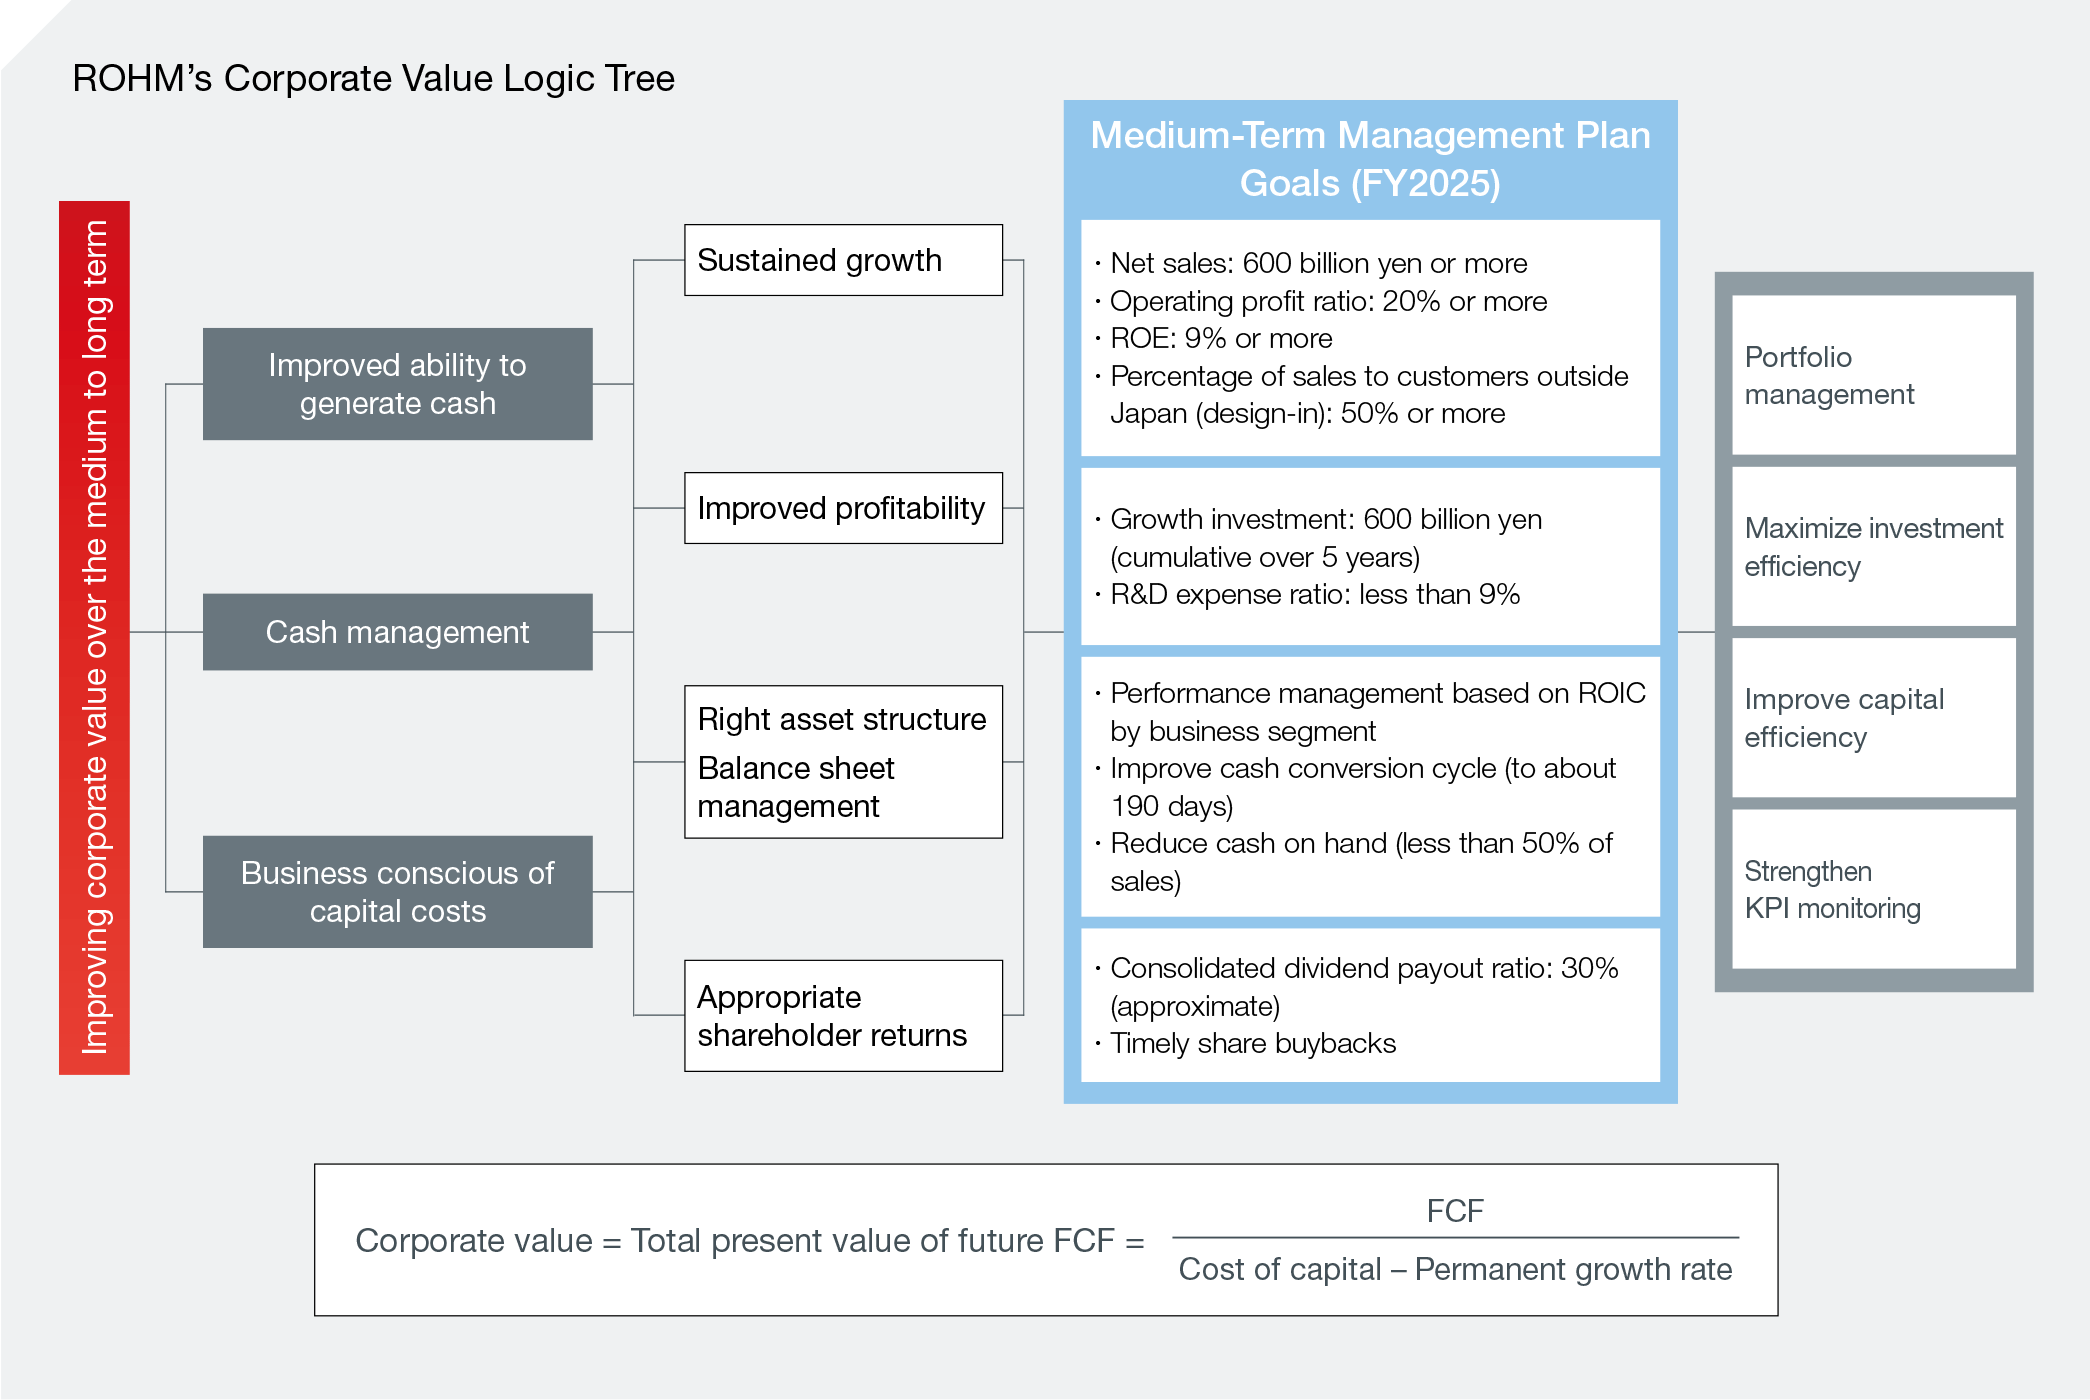 ROHM’s Corporate Value Logic Tree